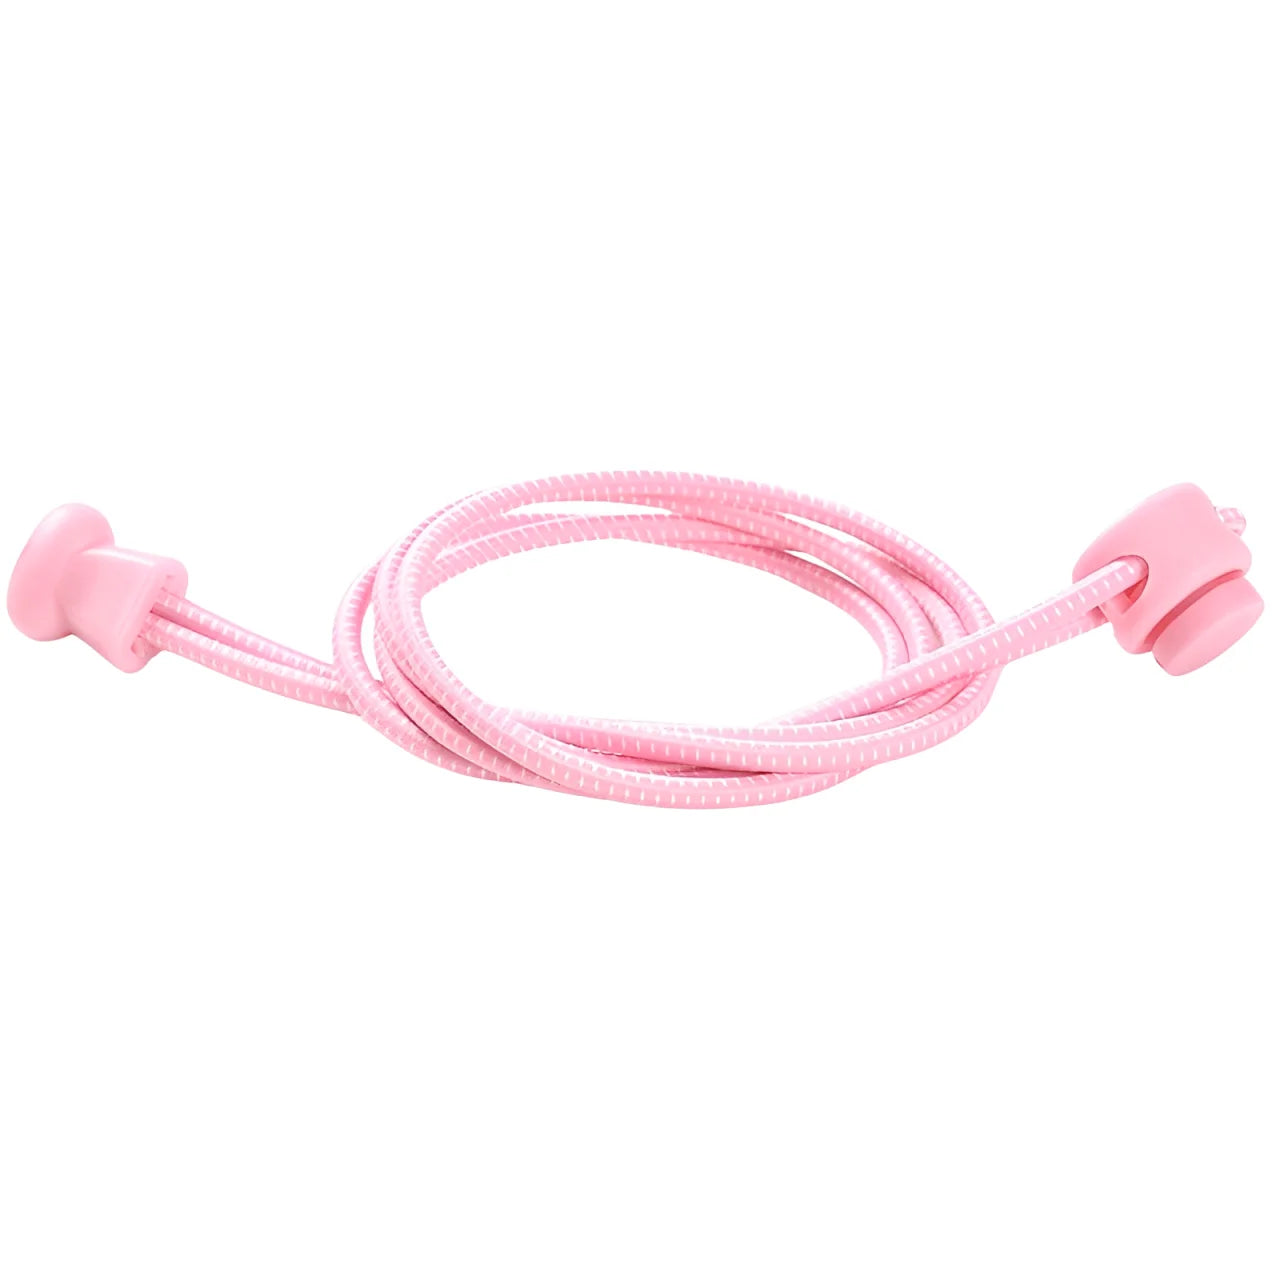 lacet élastique autobloquant rose clair et blanc